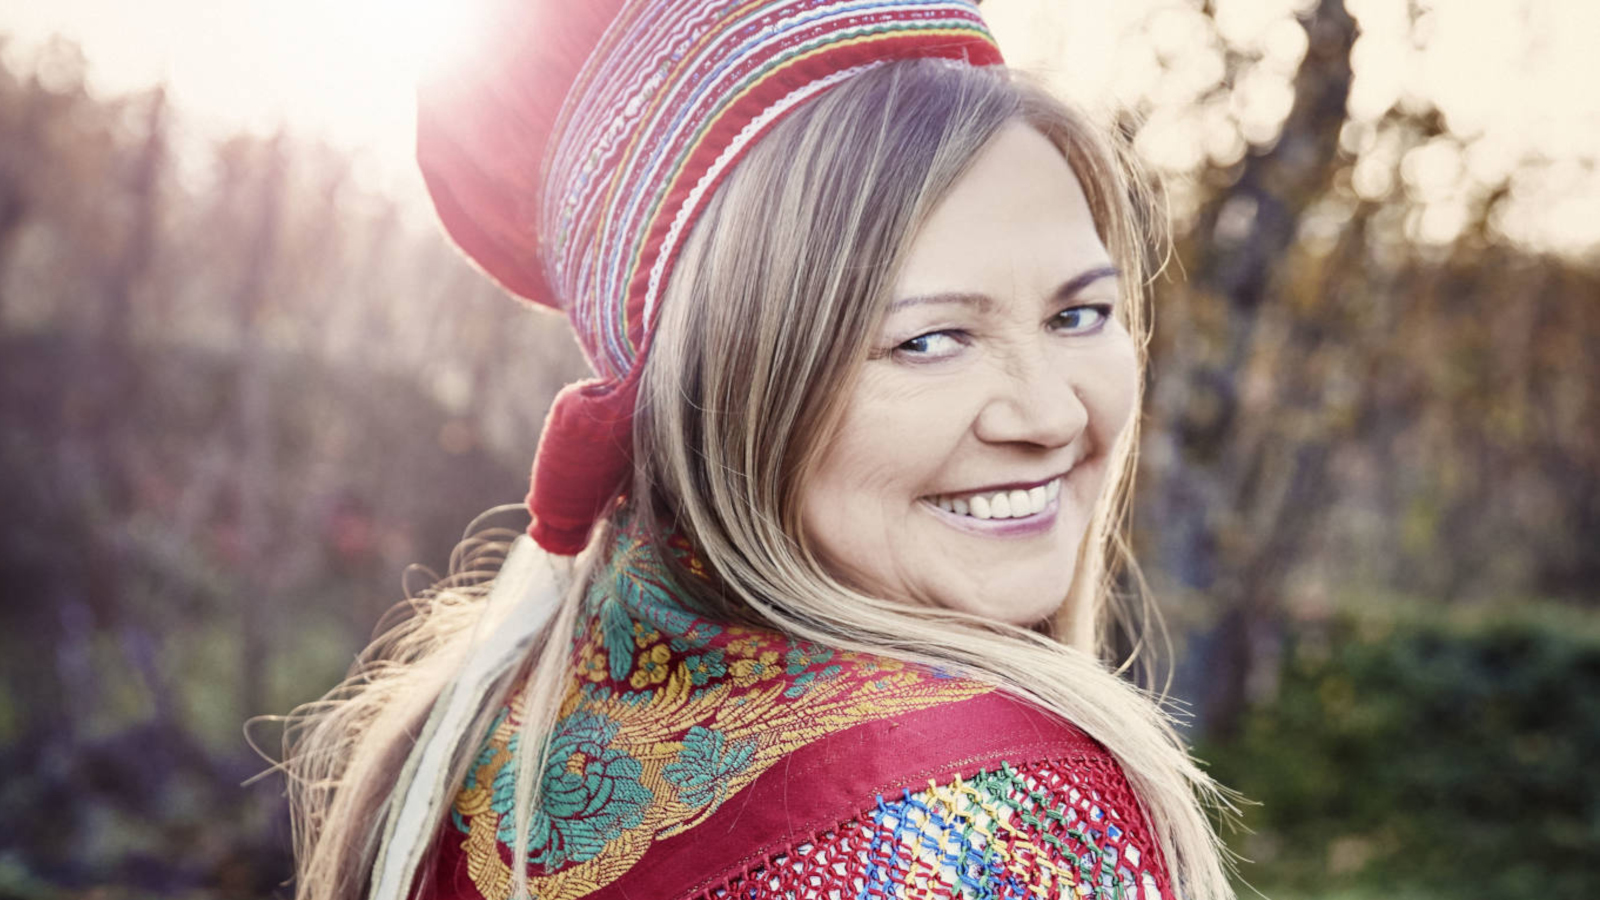 Maailman tunnetuin saamelaisartisti, norjalainen Mari Boine nähdään Kaustisella perjantaina 15.7. päälavalla.